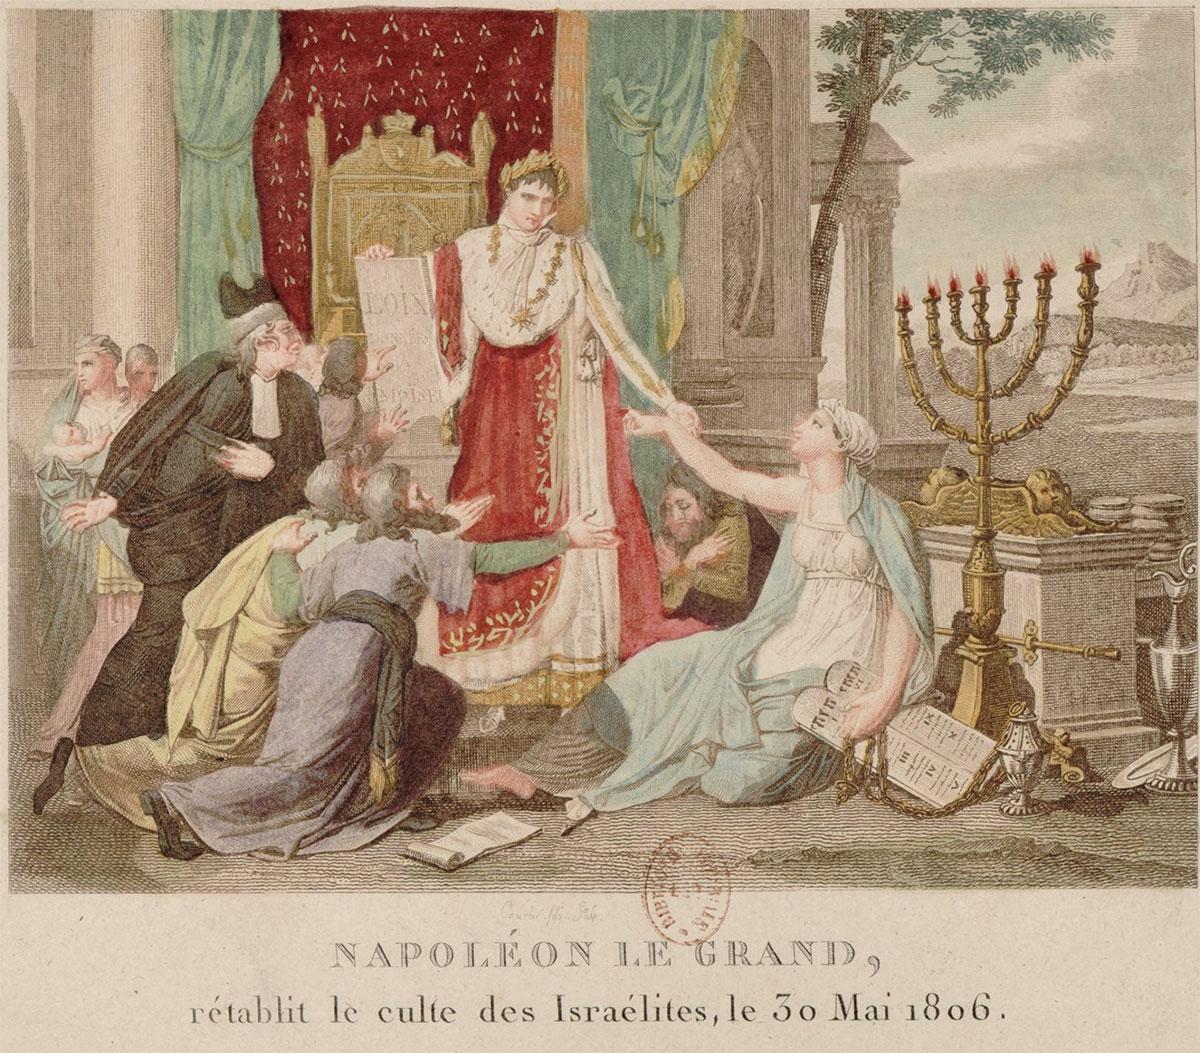 ציור של François Louis Couché משנת 1806 שמציג את נפוליאון בונפרטה המעניק שוויון זכויות ליהודים.